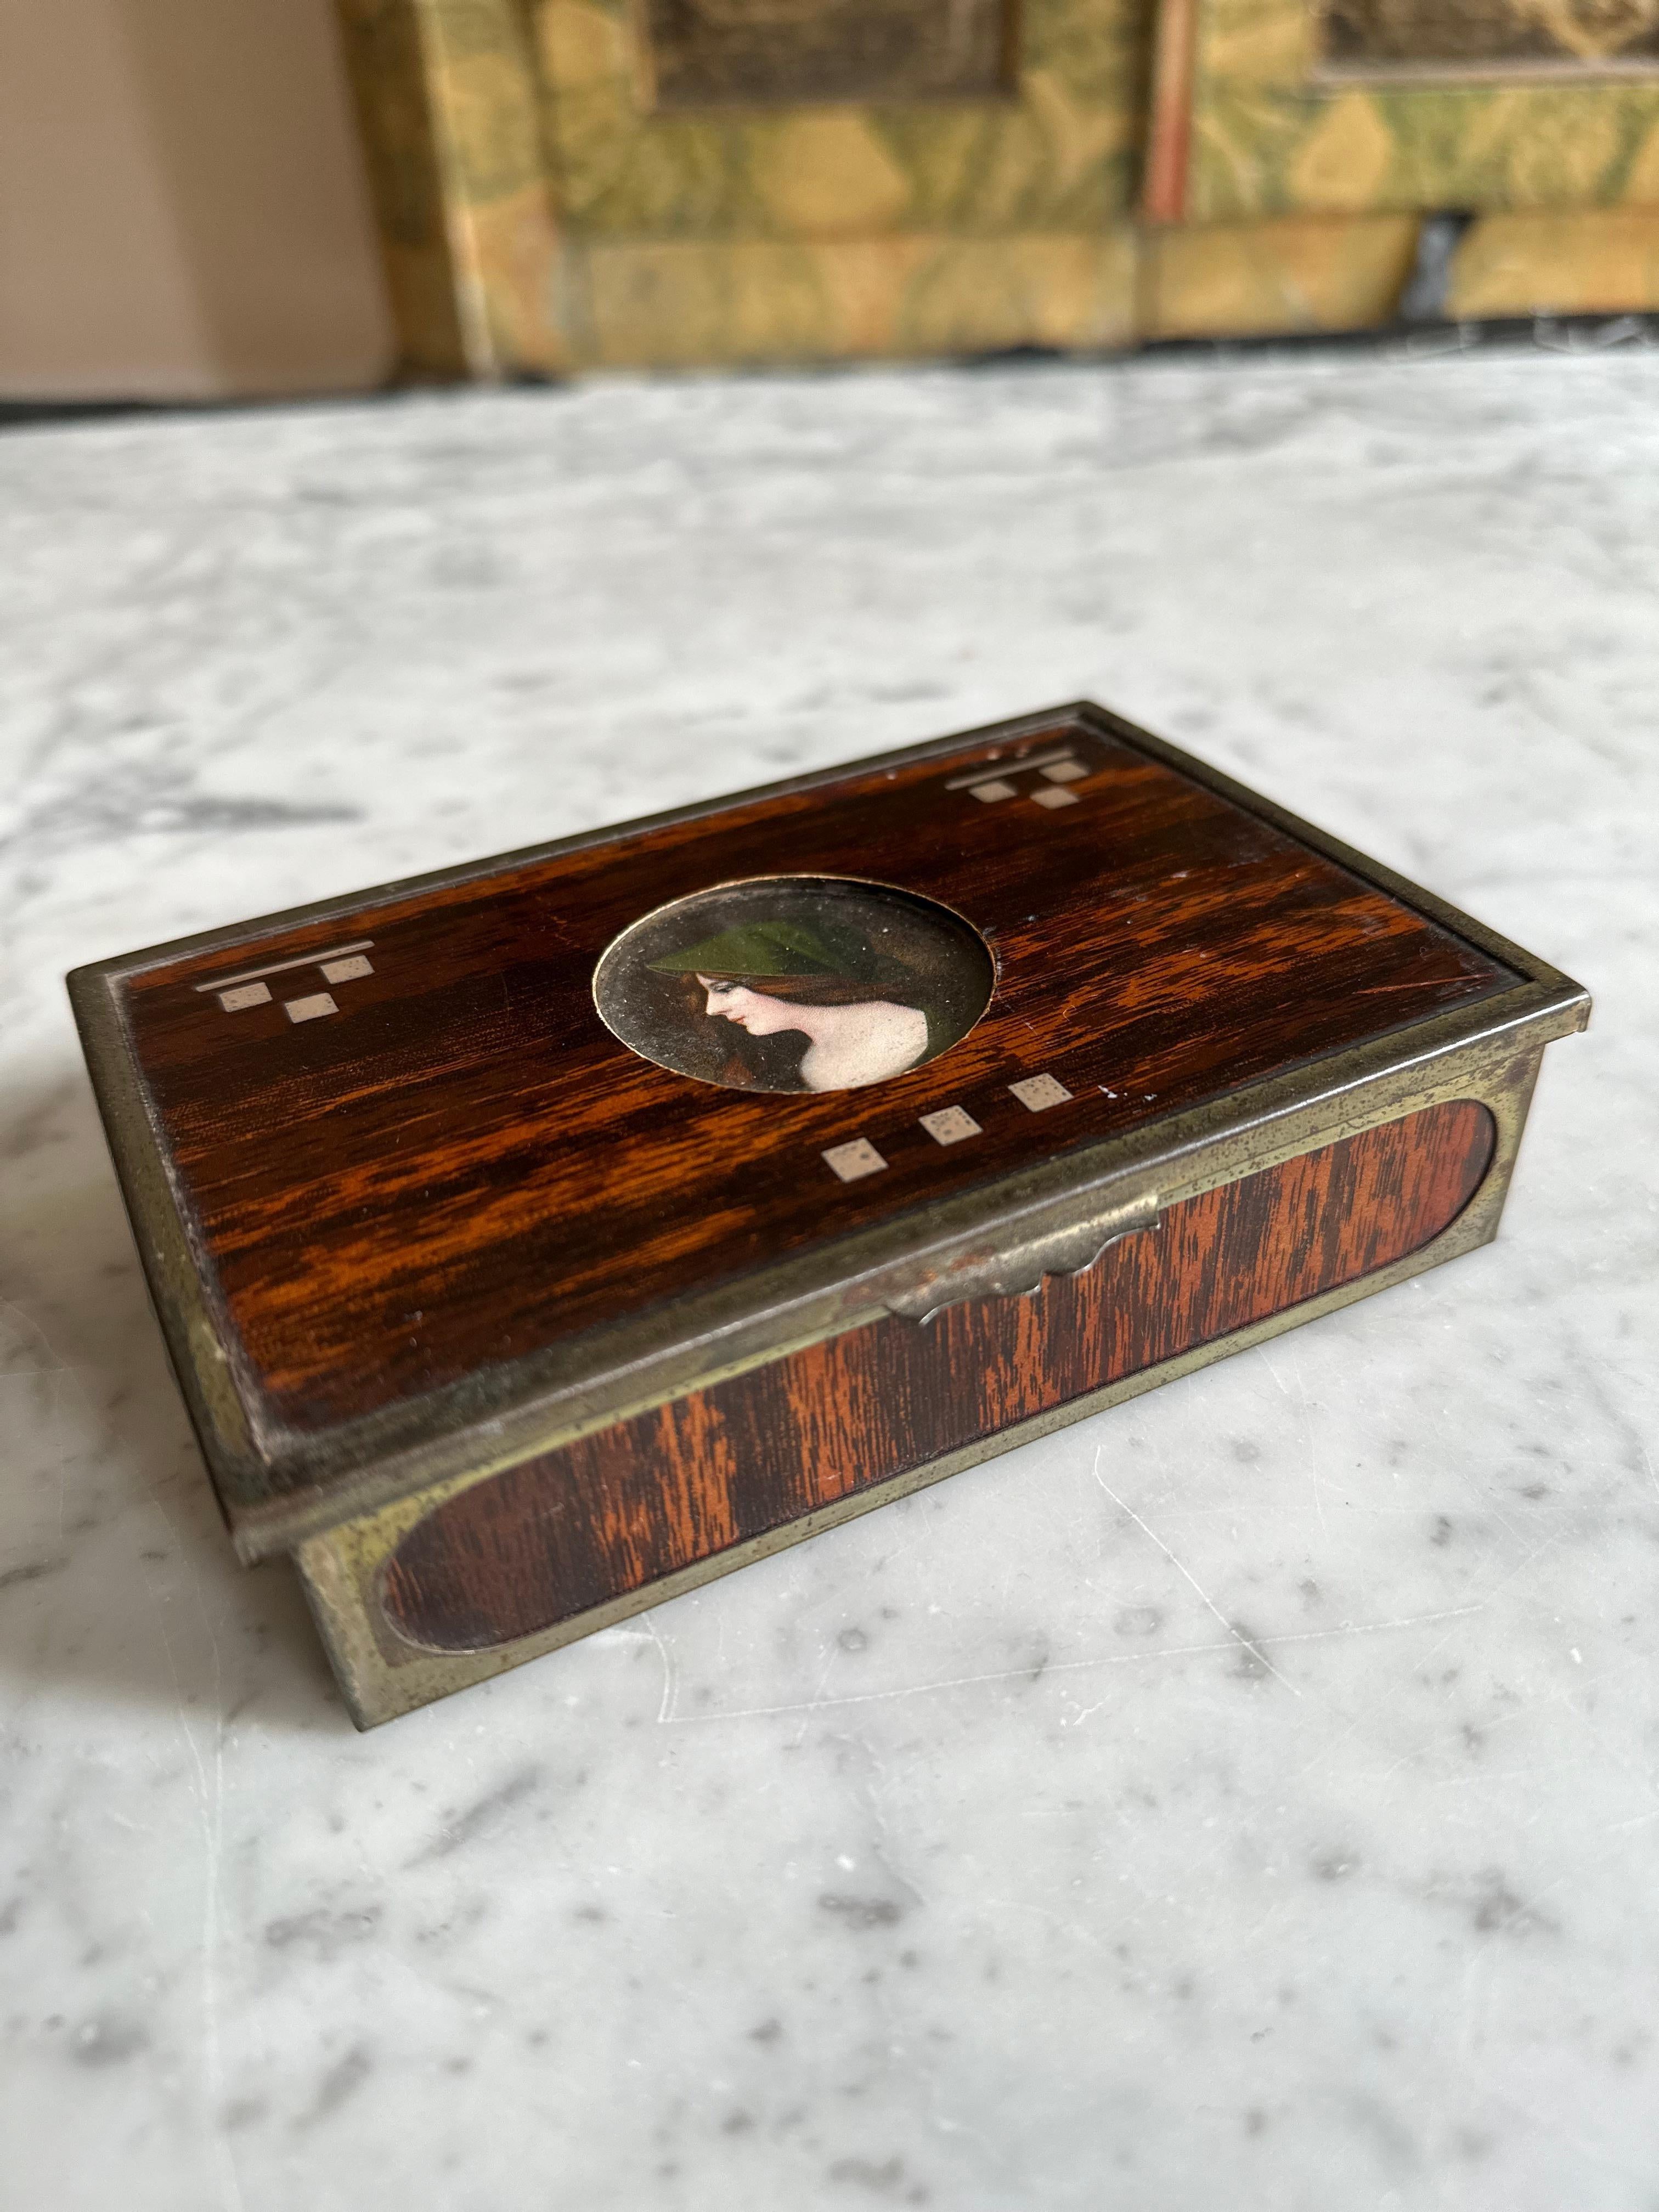 Wir stellen Ihnen unsere exquisite Small Rectangular Box vor, ein wunderschönes Relikt aus der Zeit um die Jahrhundertwende, das eine faszinierende Mischung aus verschiedenen künstlerischen Stilen darstellt. Diese charmante Schachtel ist ein Zeugnis